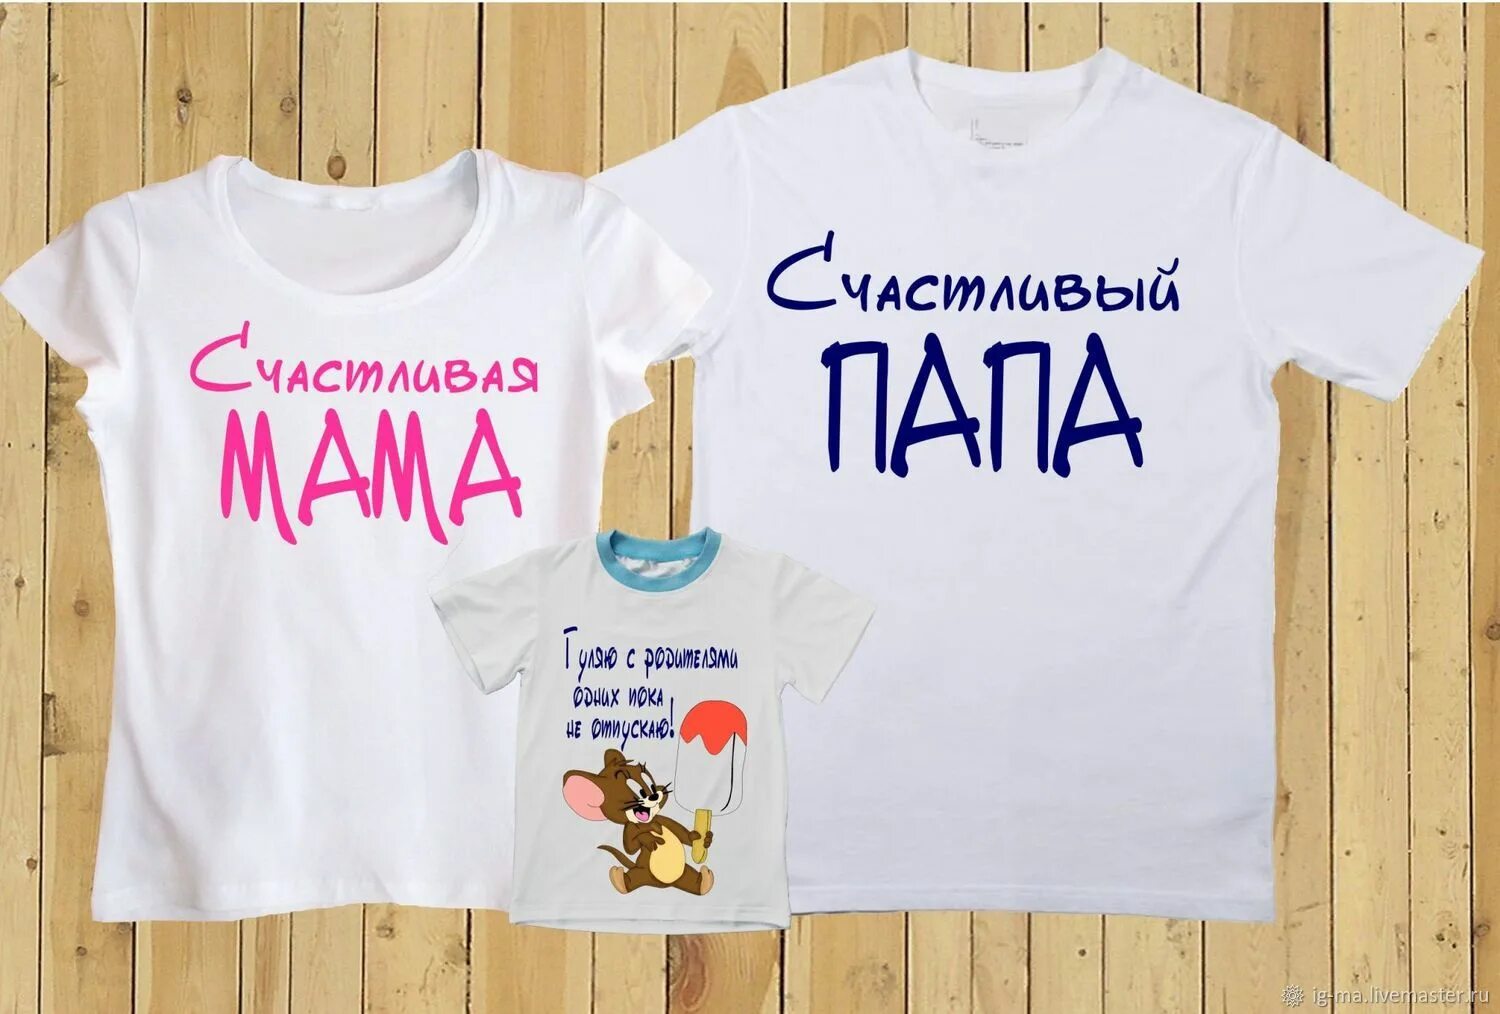 Семейные футболки. Семейные футболки с надписями. Надписи на футболках для семьи. Парные футболки для семьи. Папа дочка парной